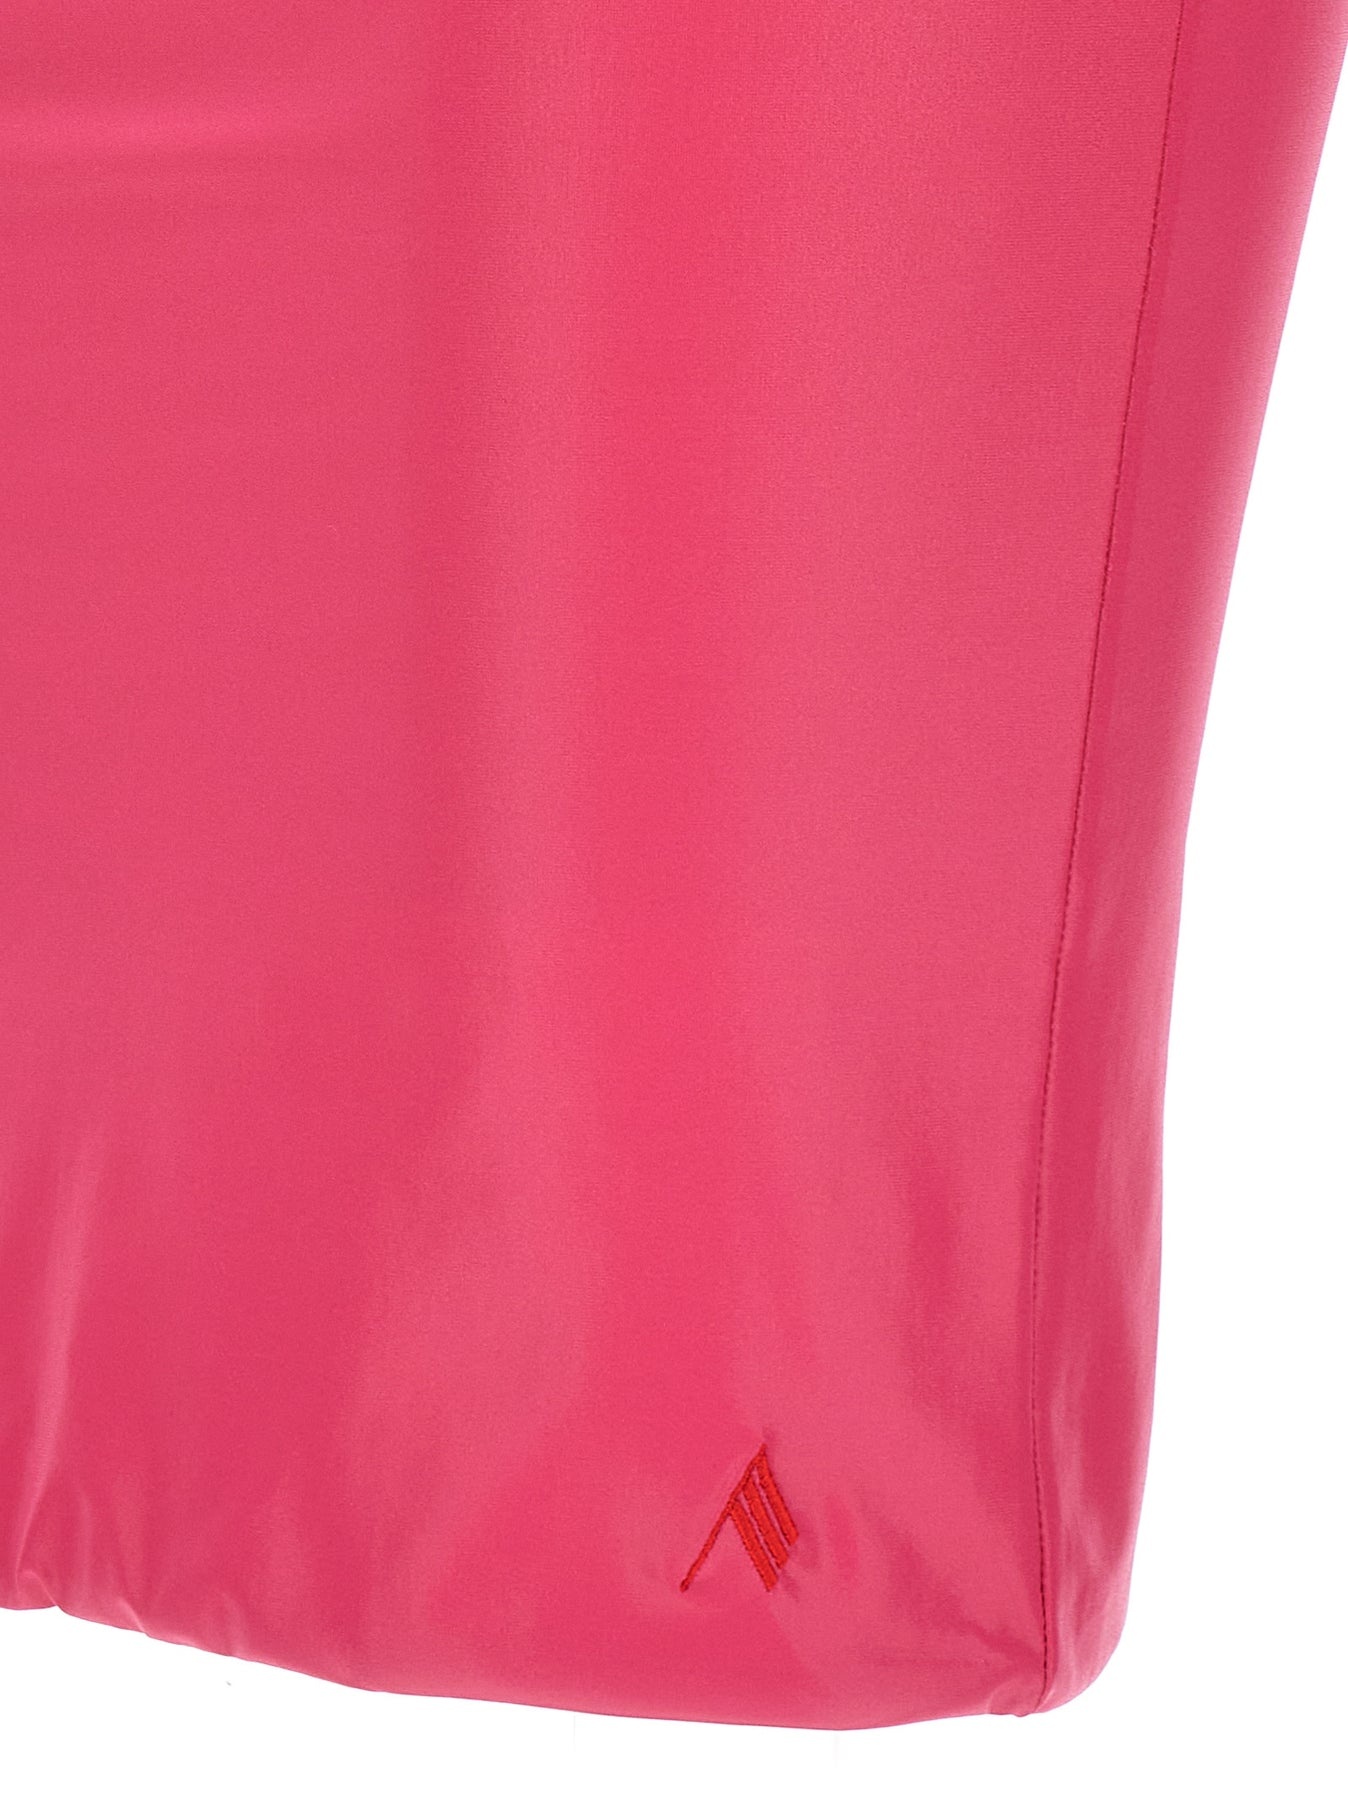 Lycra Miniskirt Beachwear Fuchsia - 4